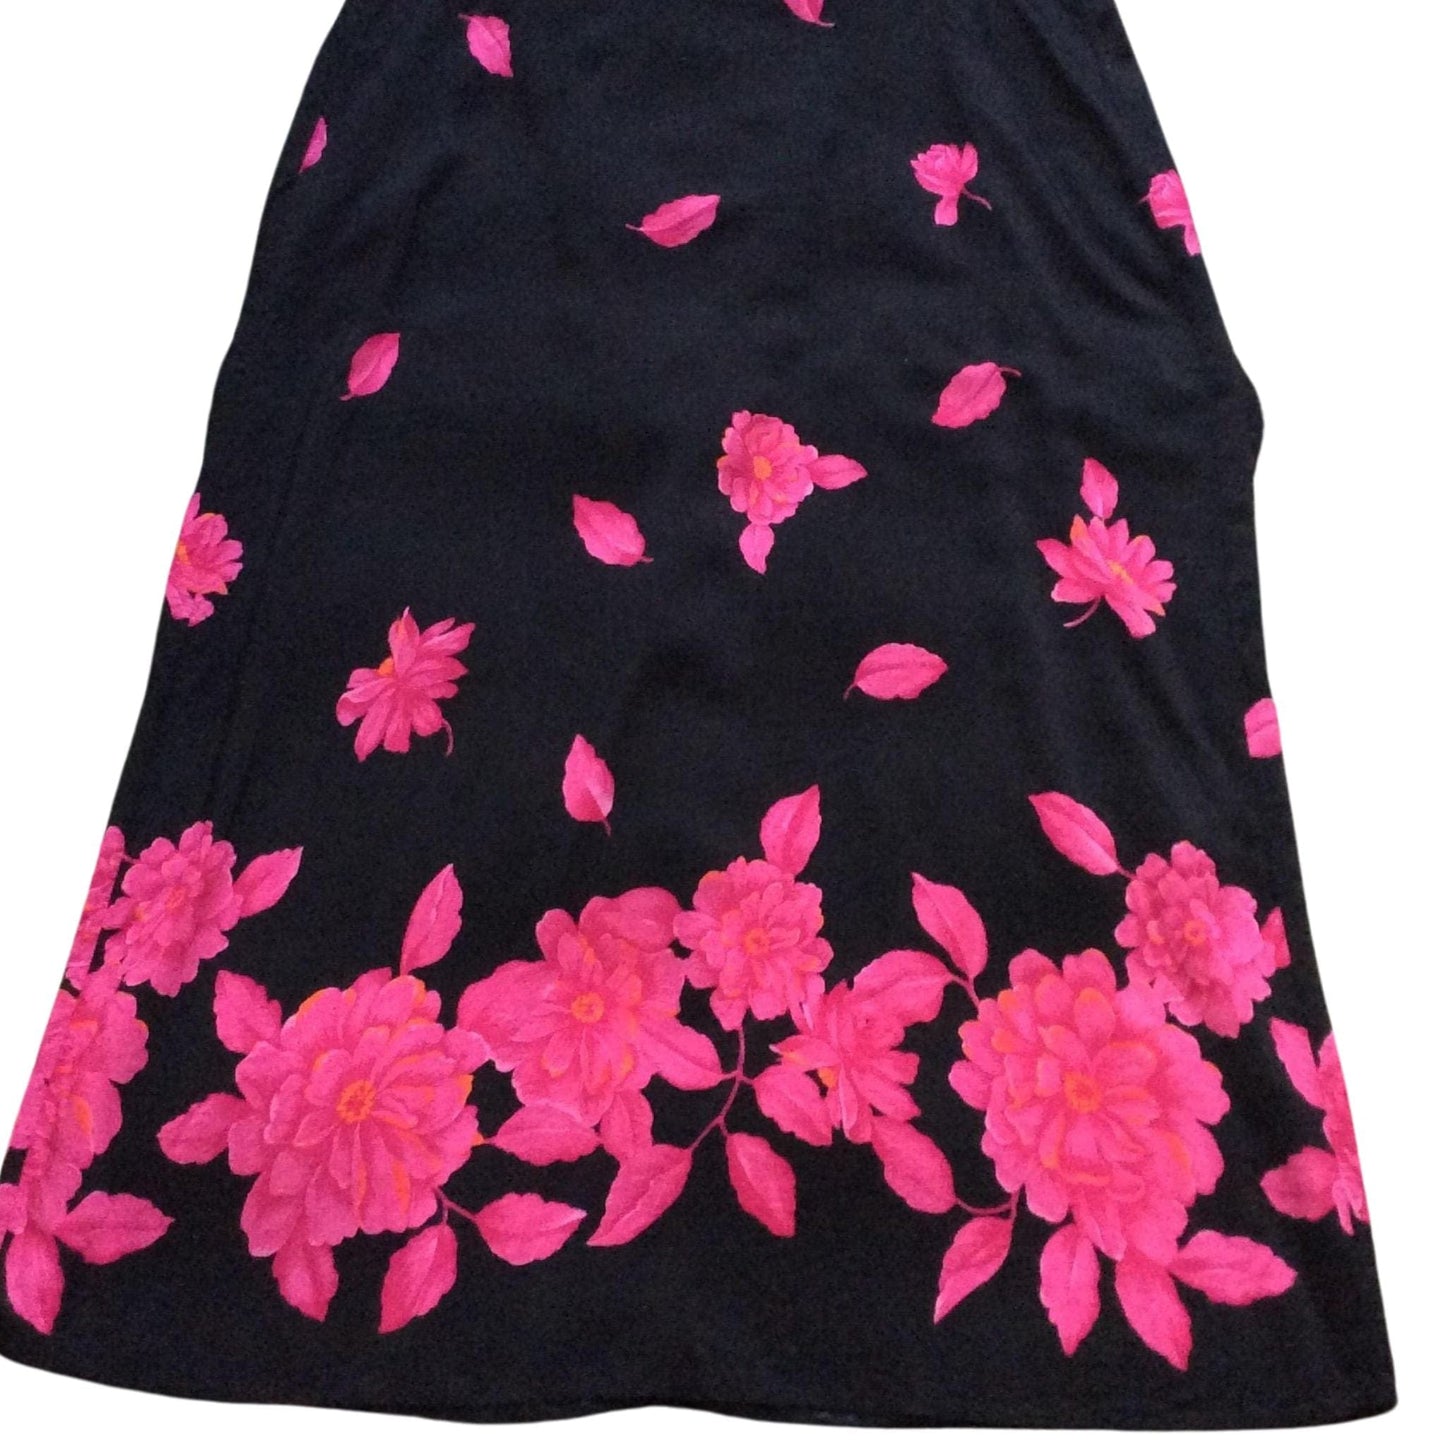 Hot Pink Floral Skirt Large / Black / Vintage 1990s